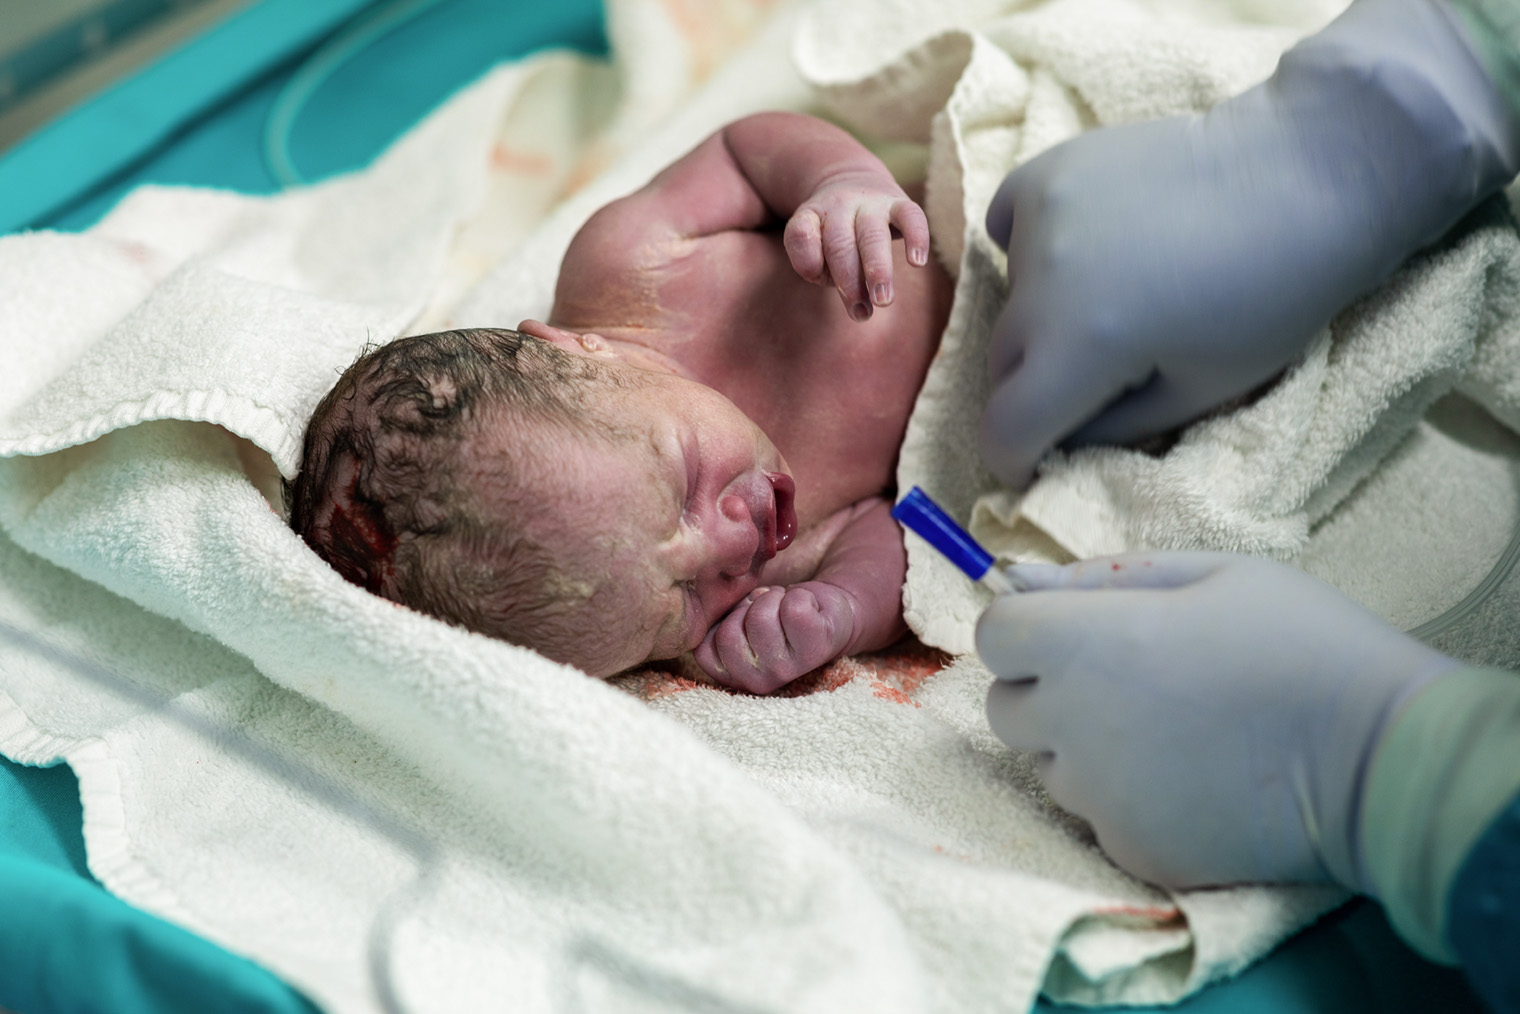 Кожа новорожденного может быть сине⁠-⁠фиолетового оттенка — по всему телу или на отдельных участках, например только на ногах или голове. Фотография: bymuratdeniz / Getty